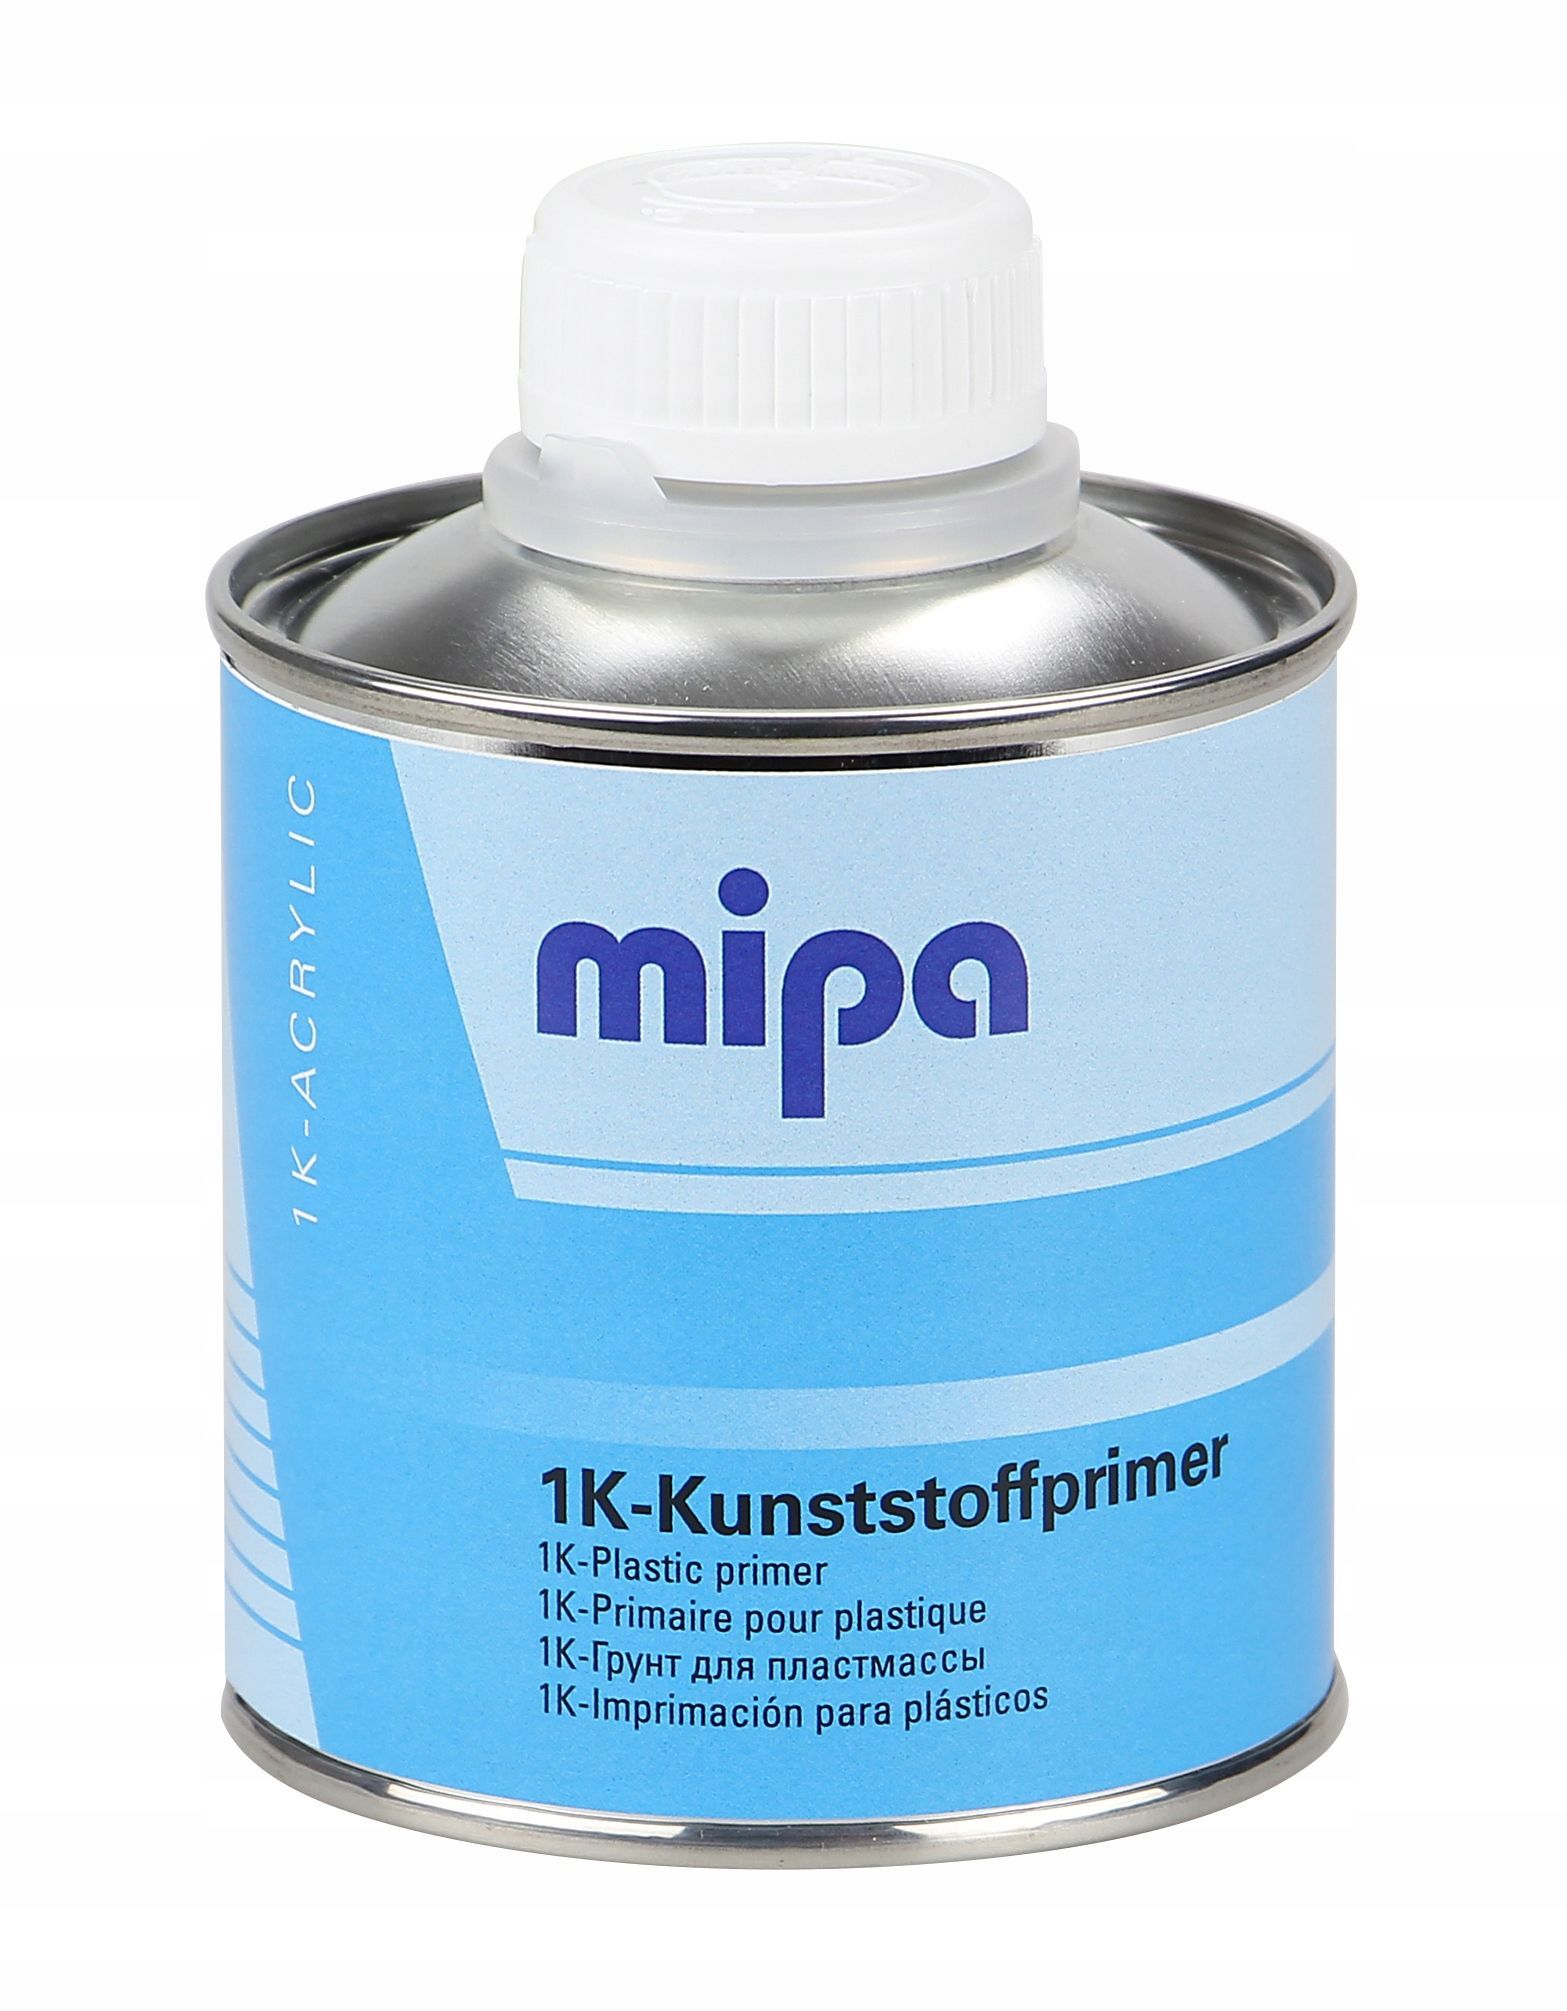 Праймер по пластику. MIPA 1k-Kunststoffprimer адгезионный грунт по пластику (0,25л). MIPA пластик праймер. Plastic primer грунт для пластика. MIPA 2k-Plastic артикул.